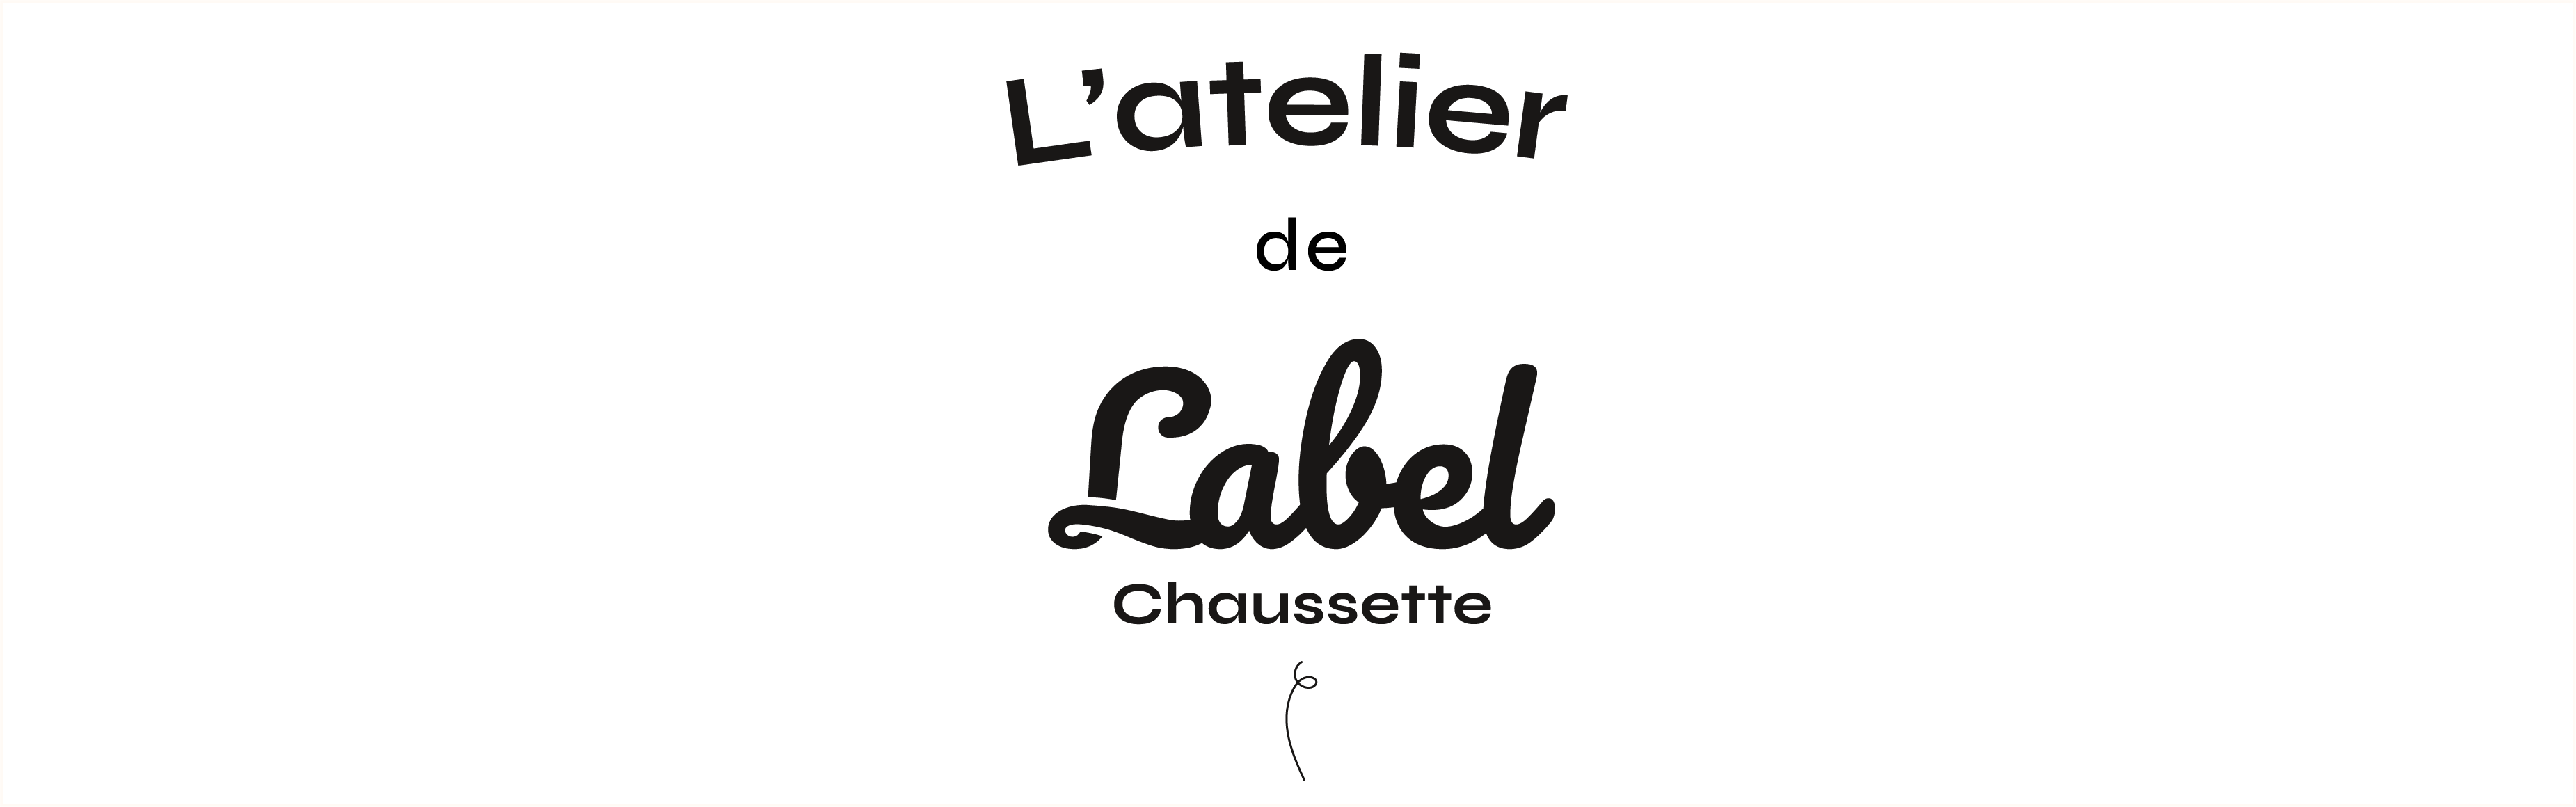 Chaussettes personnalisées - Label Chaussette